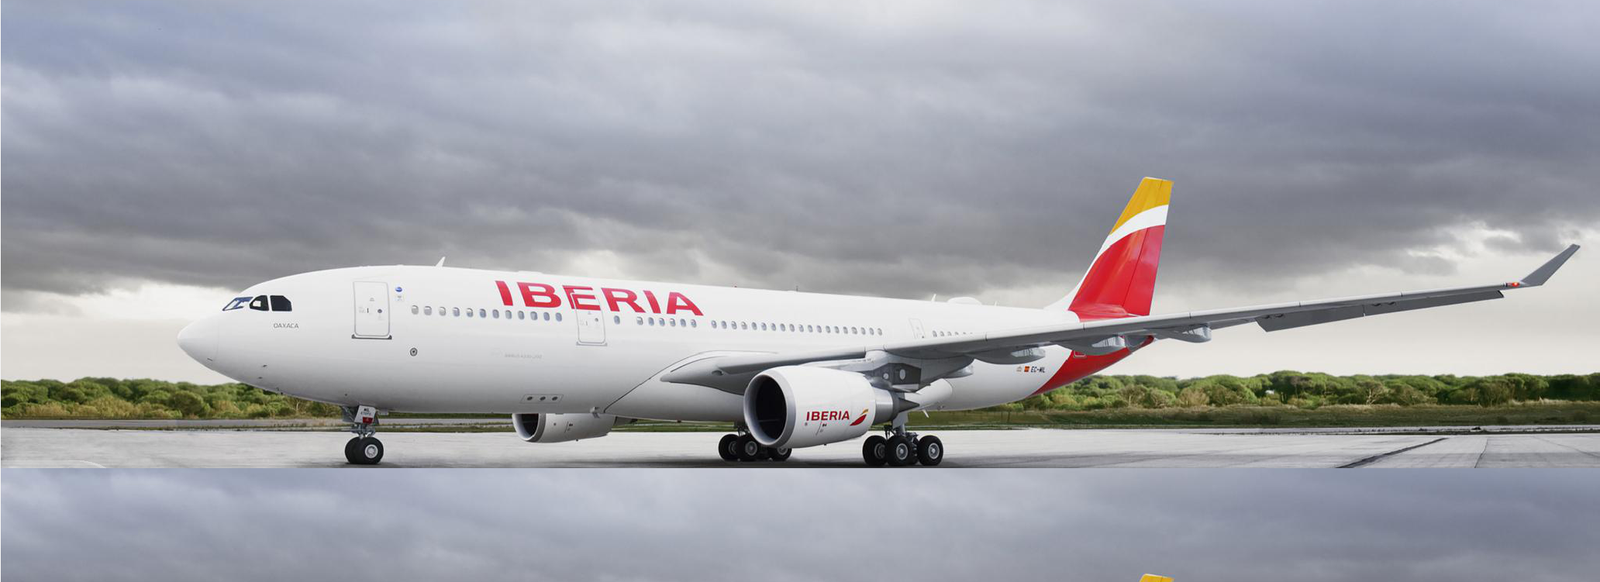 iberia-airlines